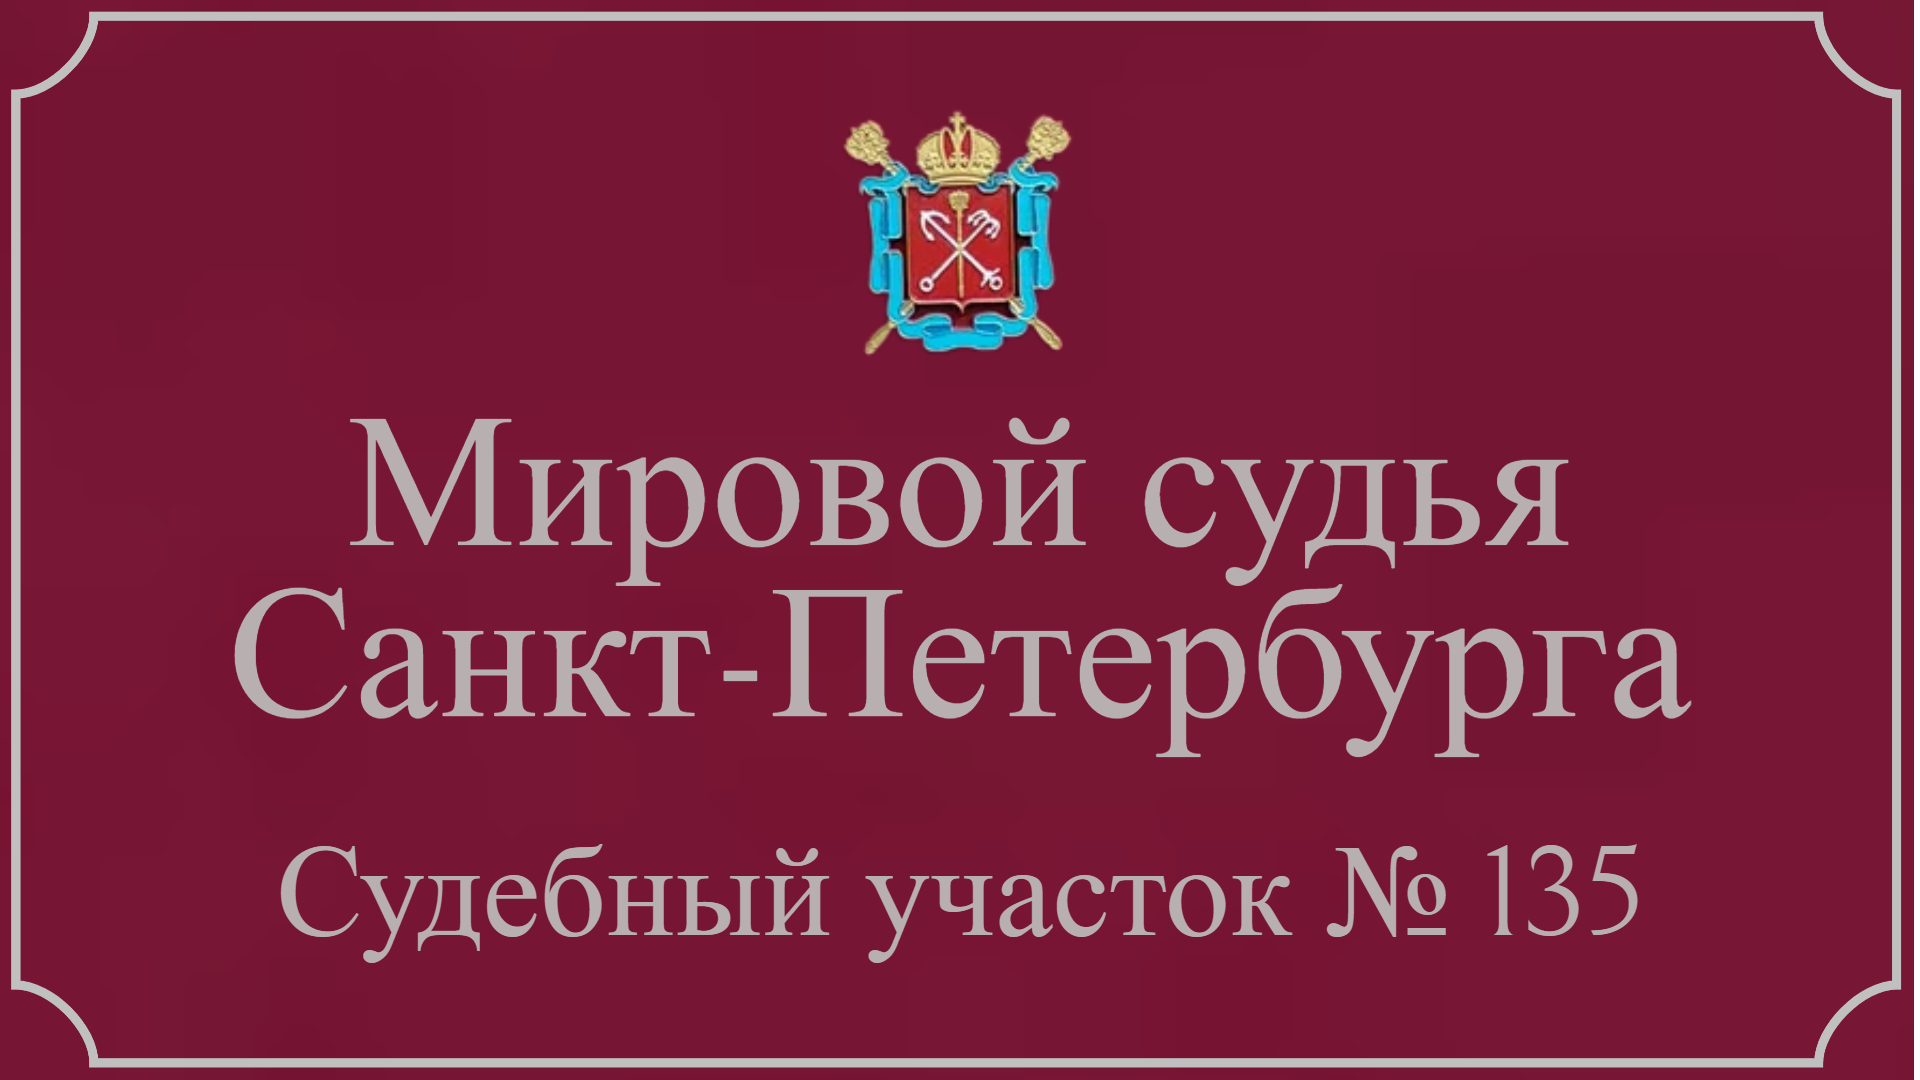 Информация по 135 судебному участку в Санкт-Петербурге.